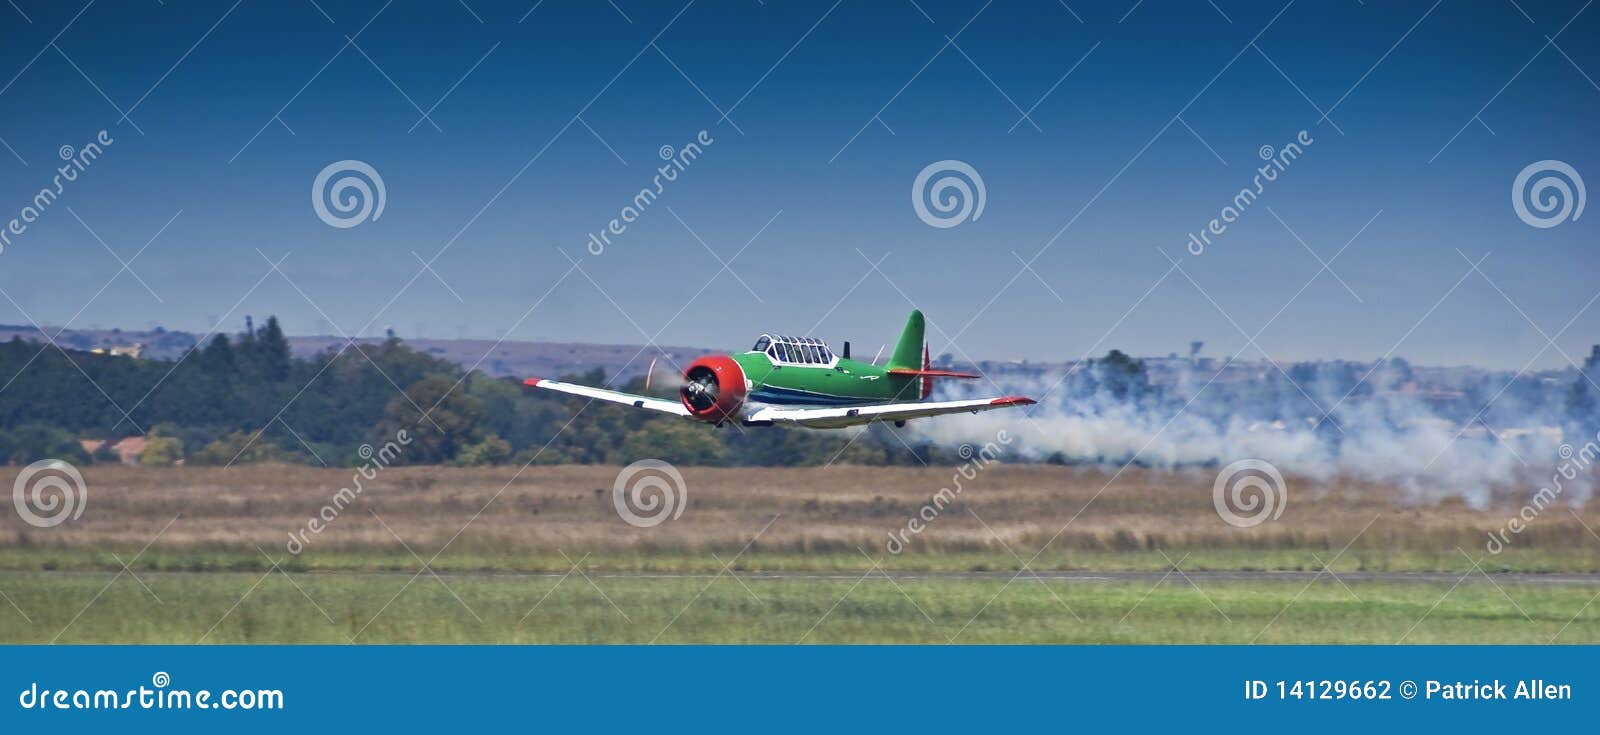 harvard aerobatic team, smoke on, flyby